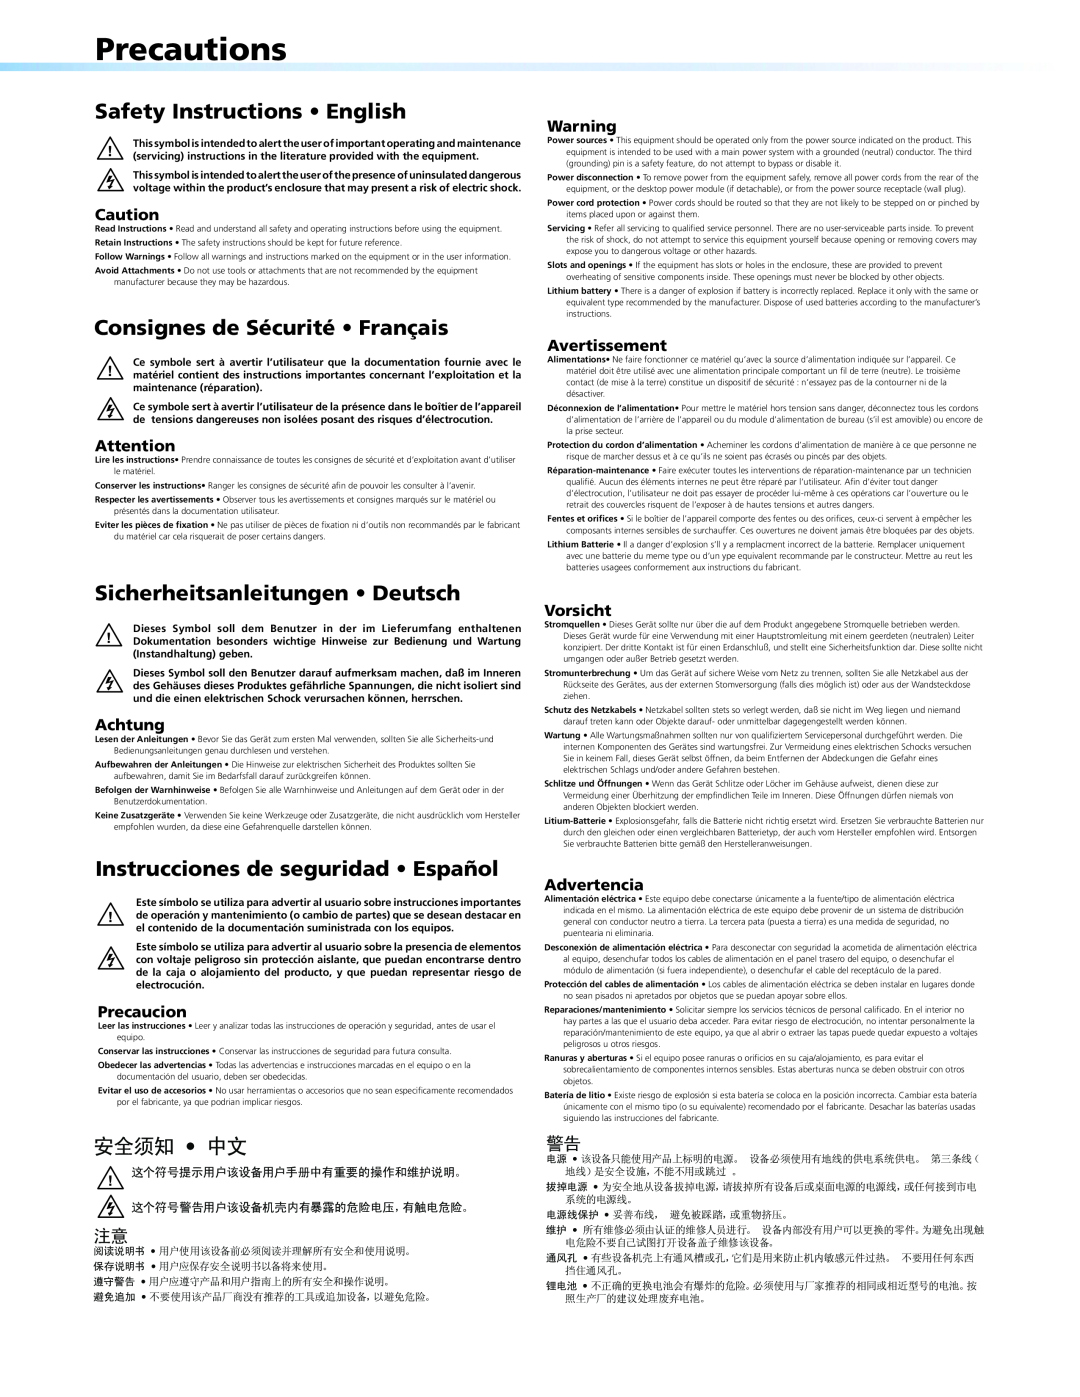 Extron electronic DVS 304 manual Precautions, Safety Instructions • English, Consignes de Sécurité • Français, 安全须知 • 中文 